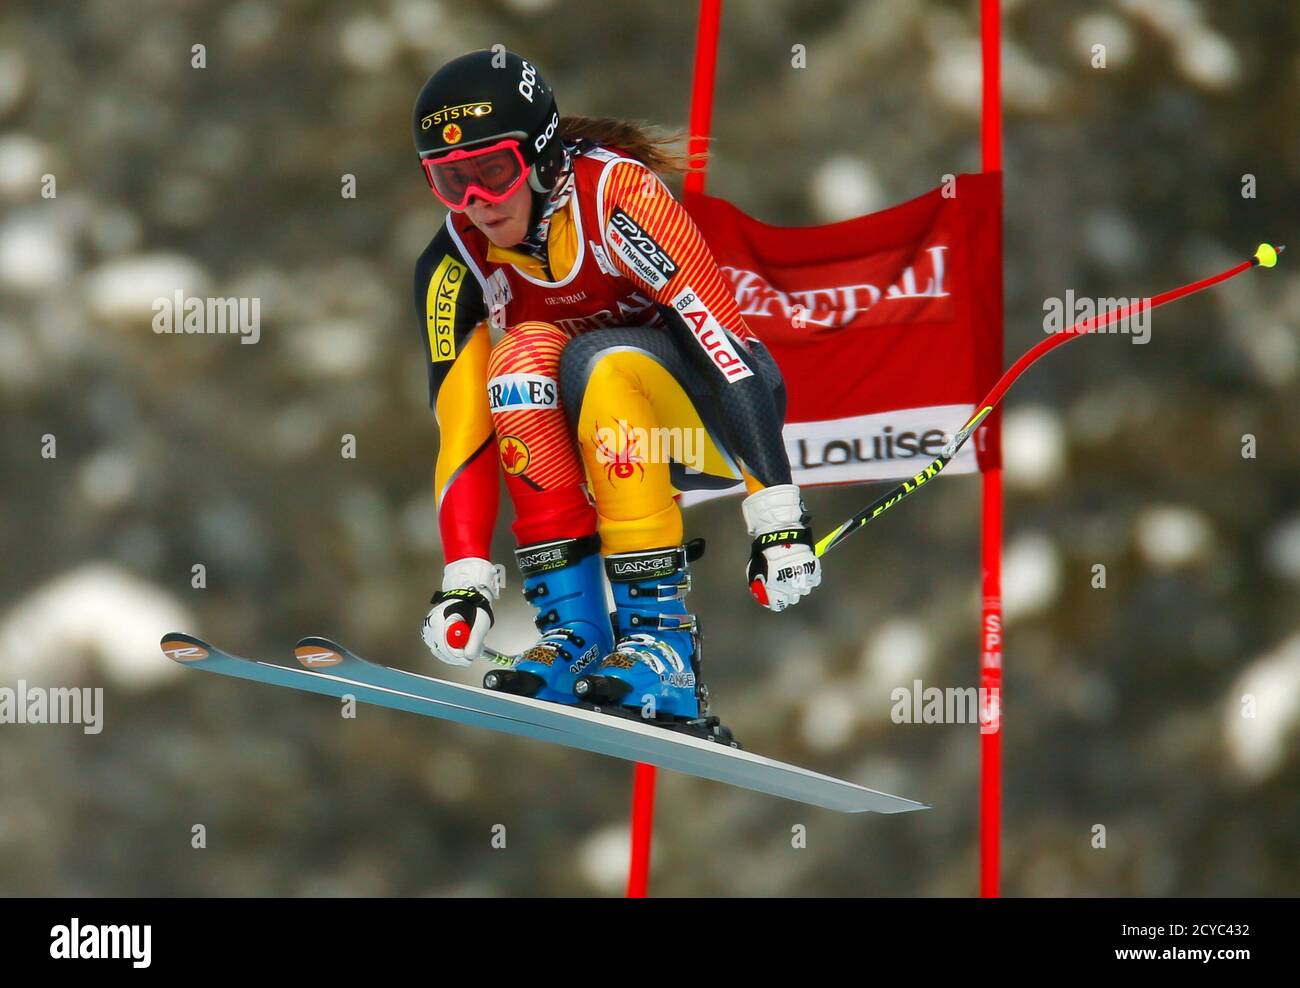 Marie-Michele Gagnon du Canada prend l'air pendant la formation en ski alpin pour la coupe du monde féminine de descente à Lake Louise, en Alberta, le 27 novembre 2012. REUTERS/Mike Blake (CANADA - Tags: SKI DE SPORT) Banque D'Images